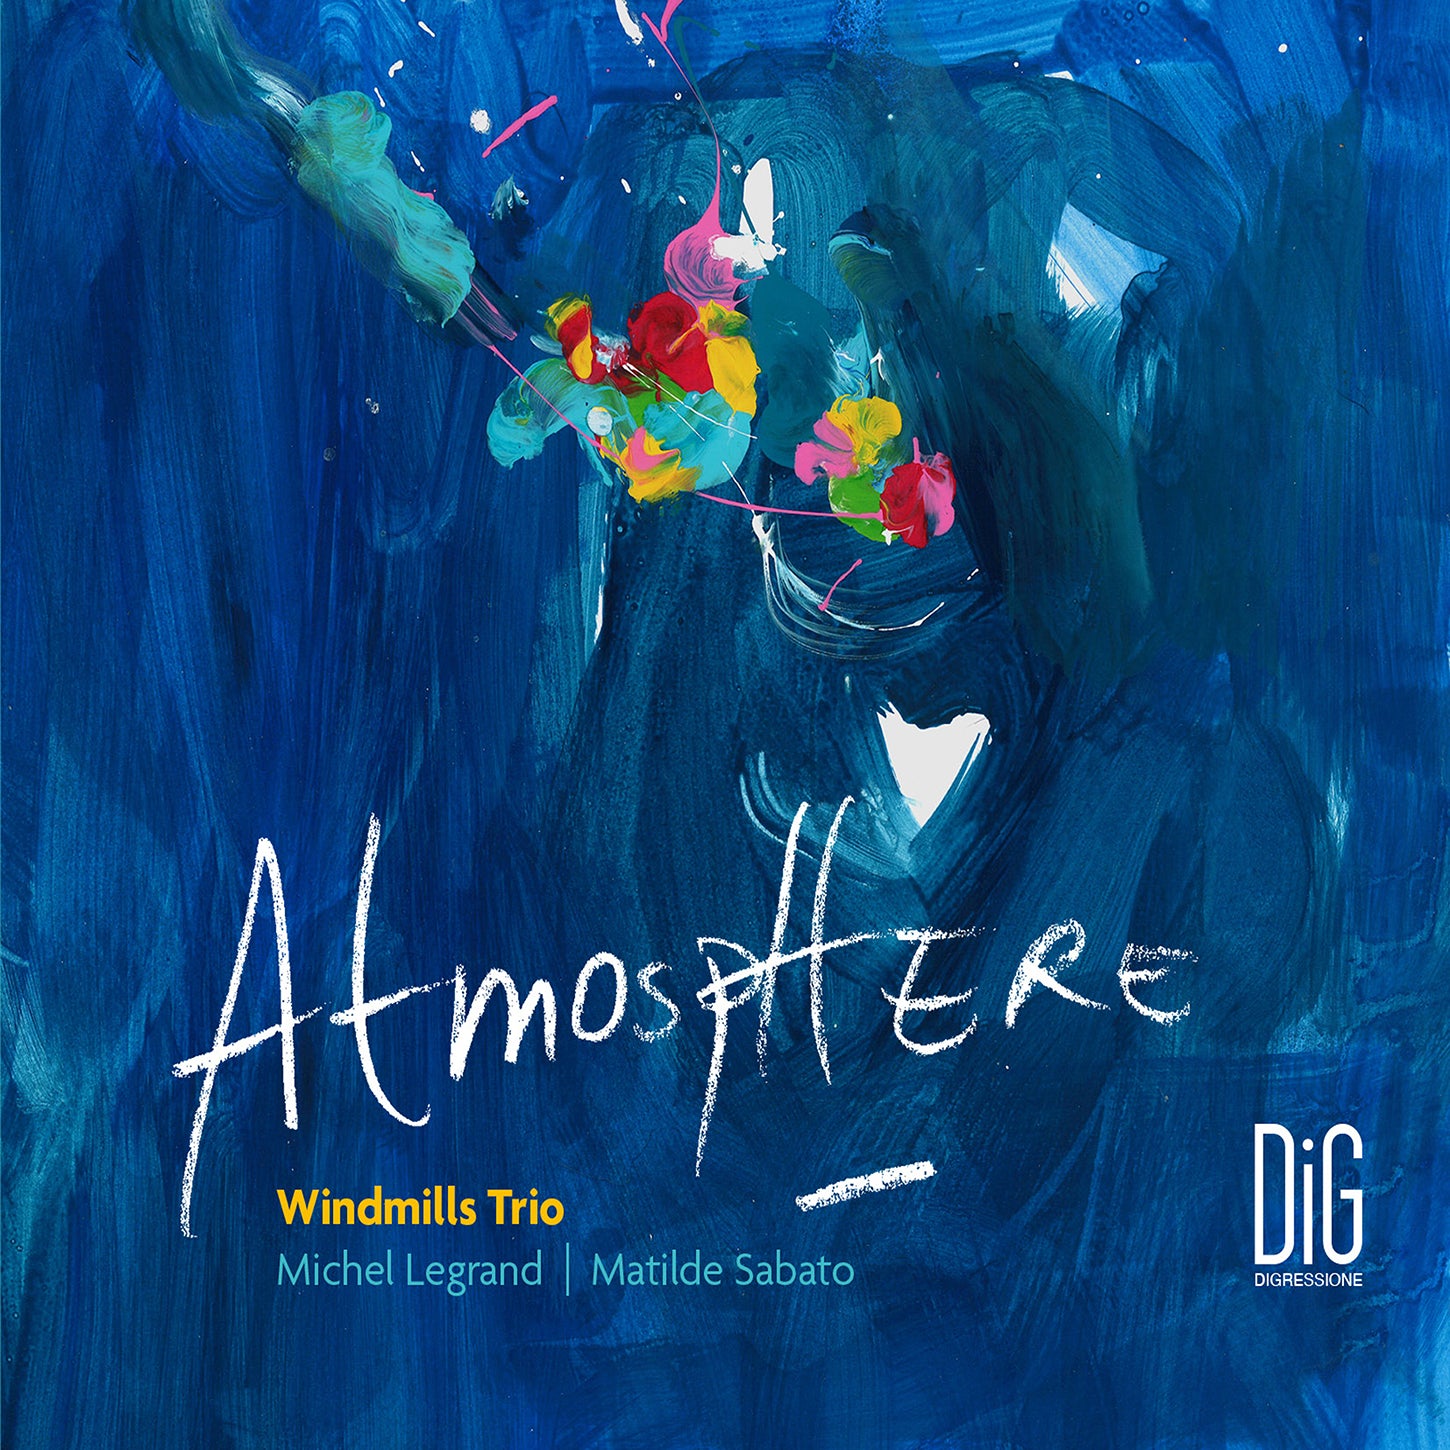 Atmosphere - Music of Michel Legrand & Matilde Sabato